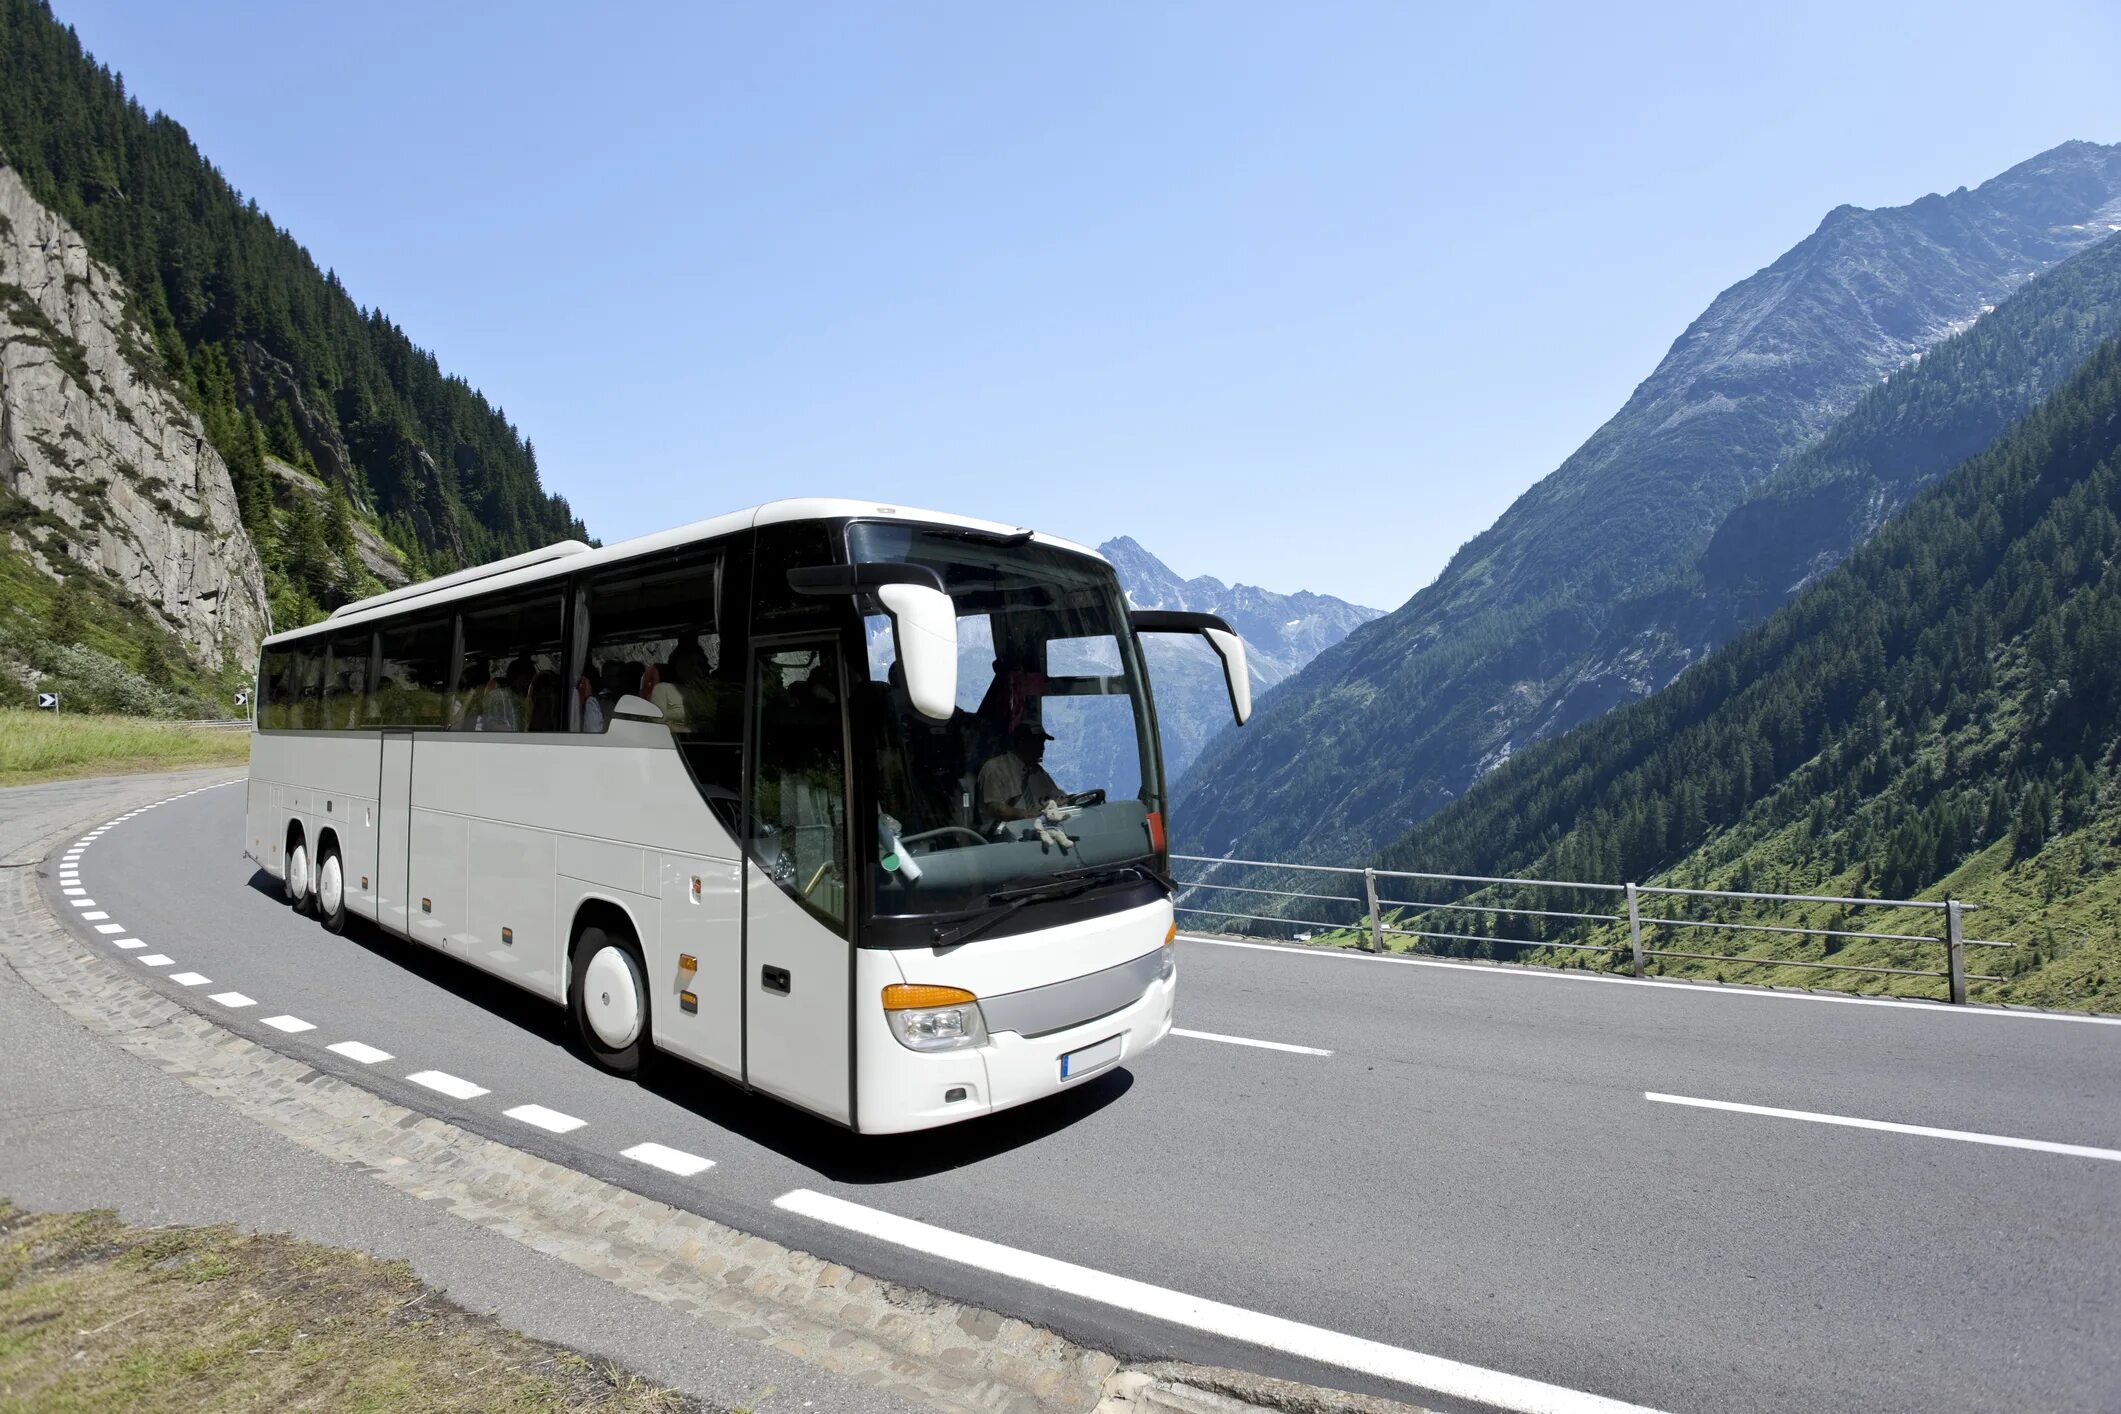 Volvo Bus 2020. Volvo 9900 Bus 2020. Экскурсионный автобус Higer. Автобус в горах.